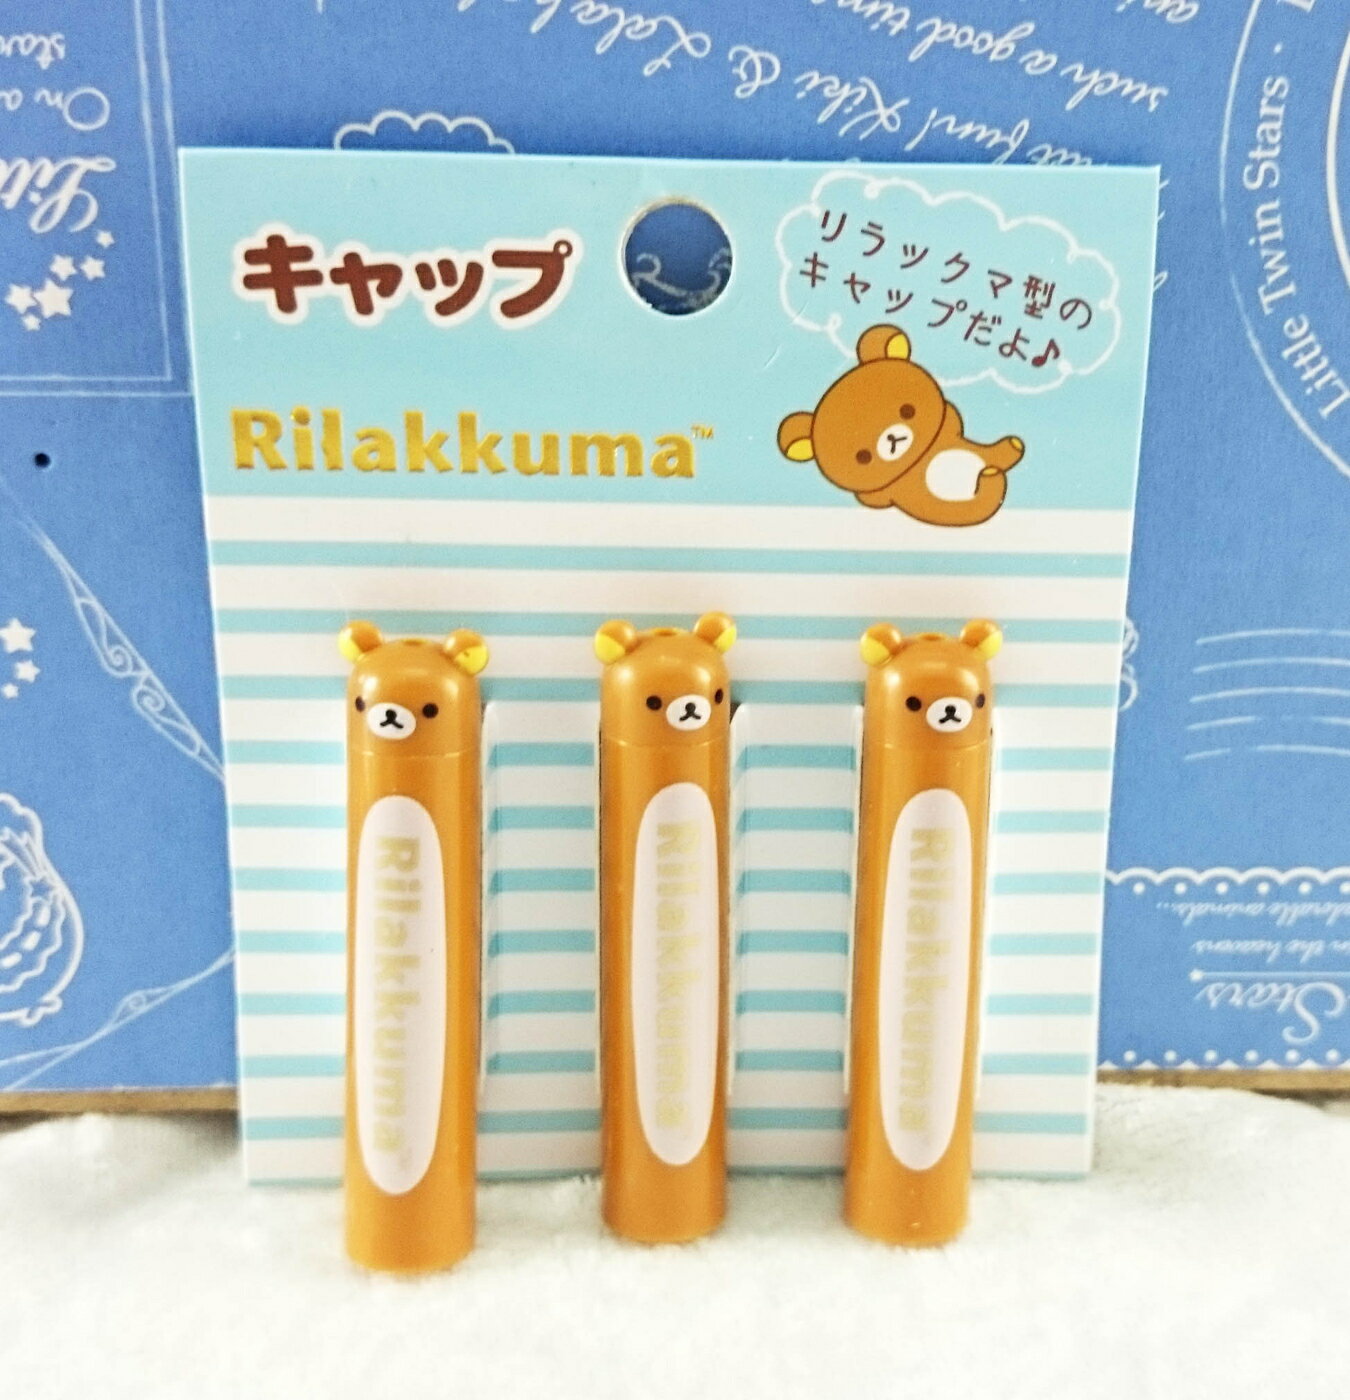 【震撼精品百貨】Rilakkuma San-X 拉拉熊懶懶熊 筆蓋 哥頭 震撼日式精品百貨